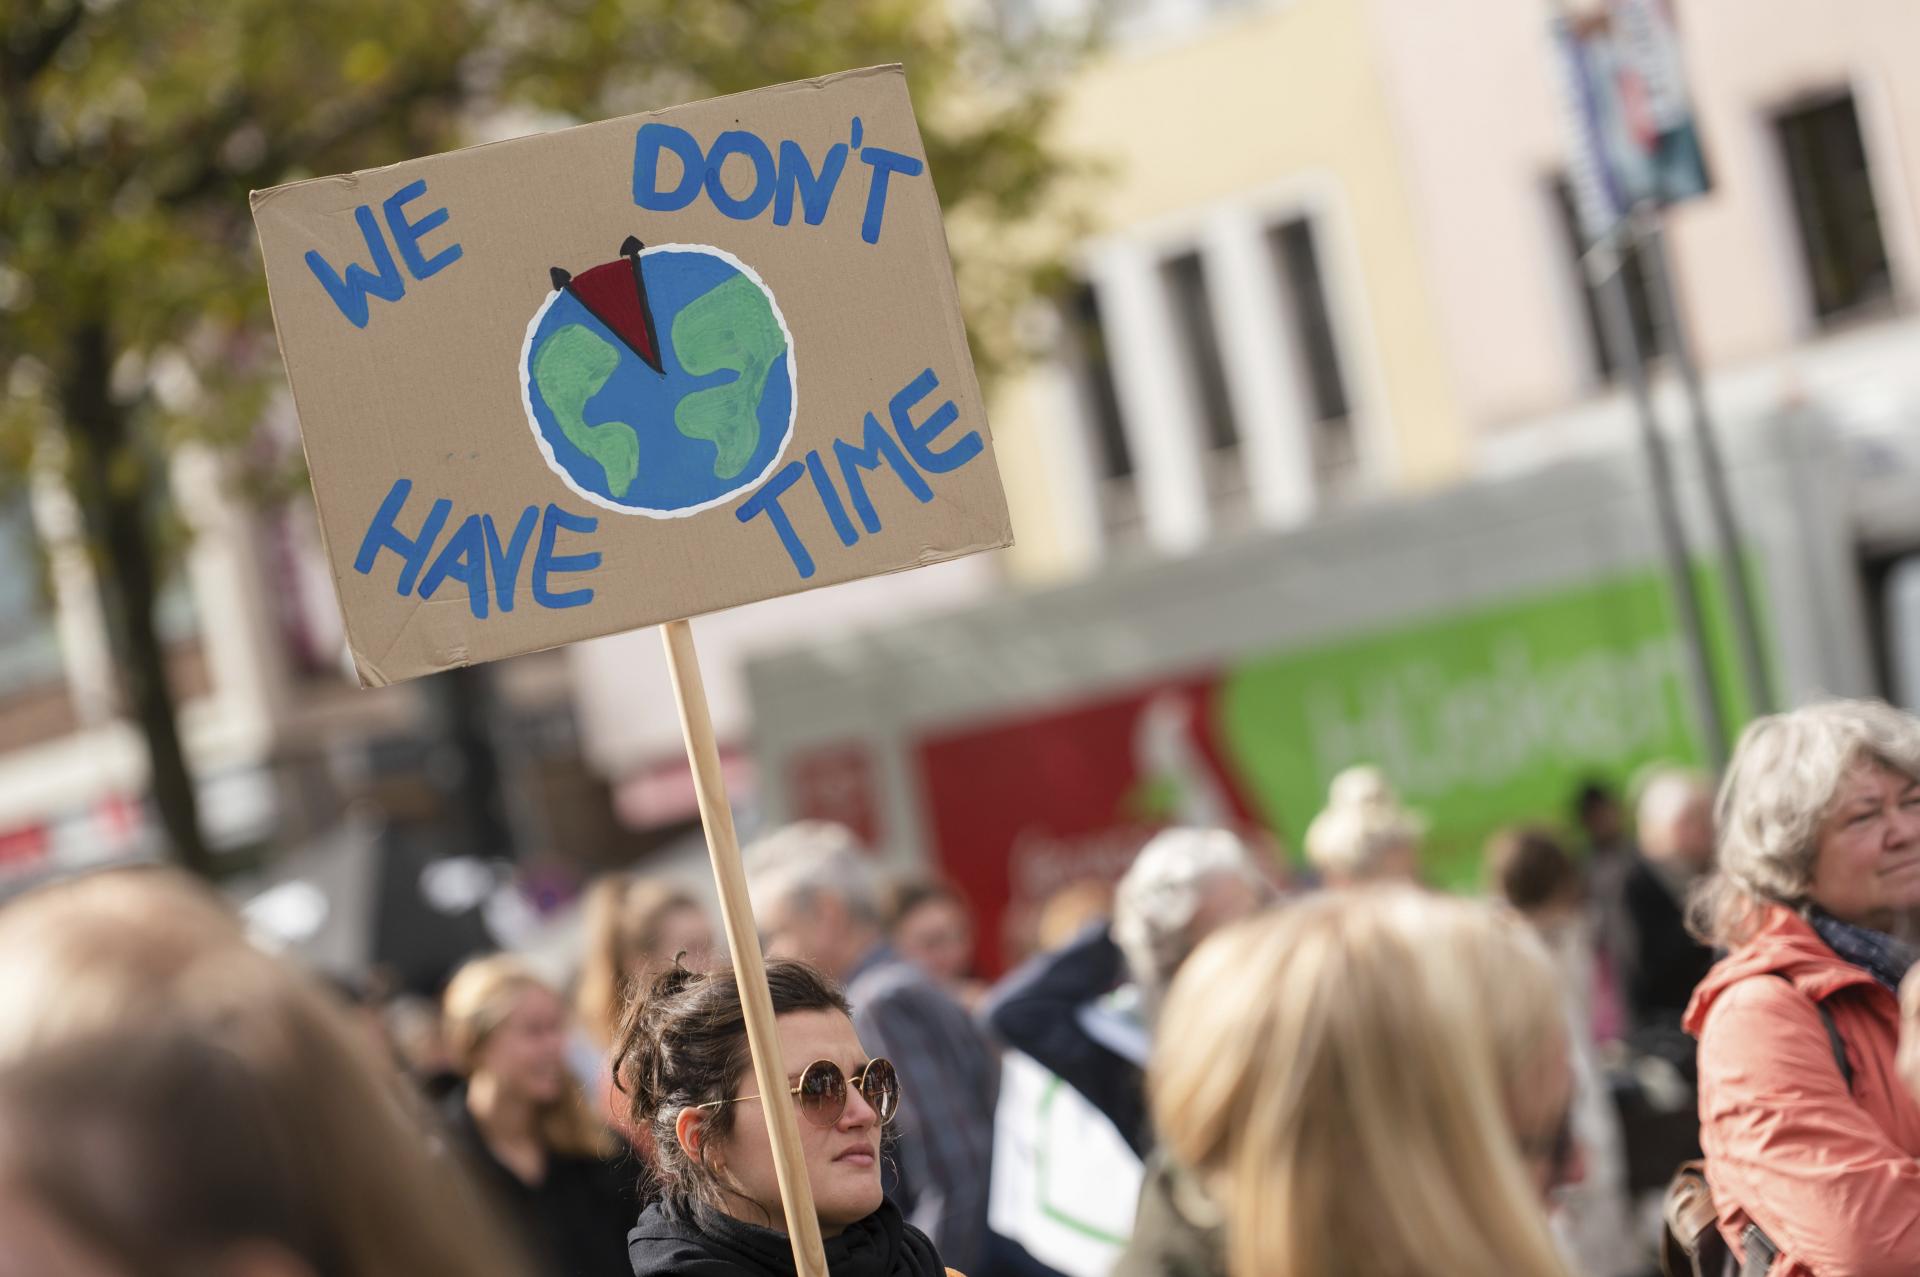 OSN: Musíme konať. Klimatické prísľuby vlád nestačia